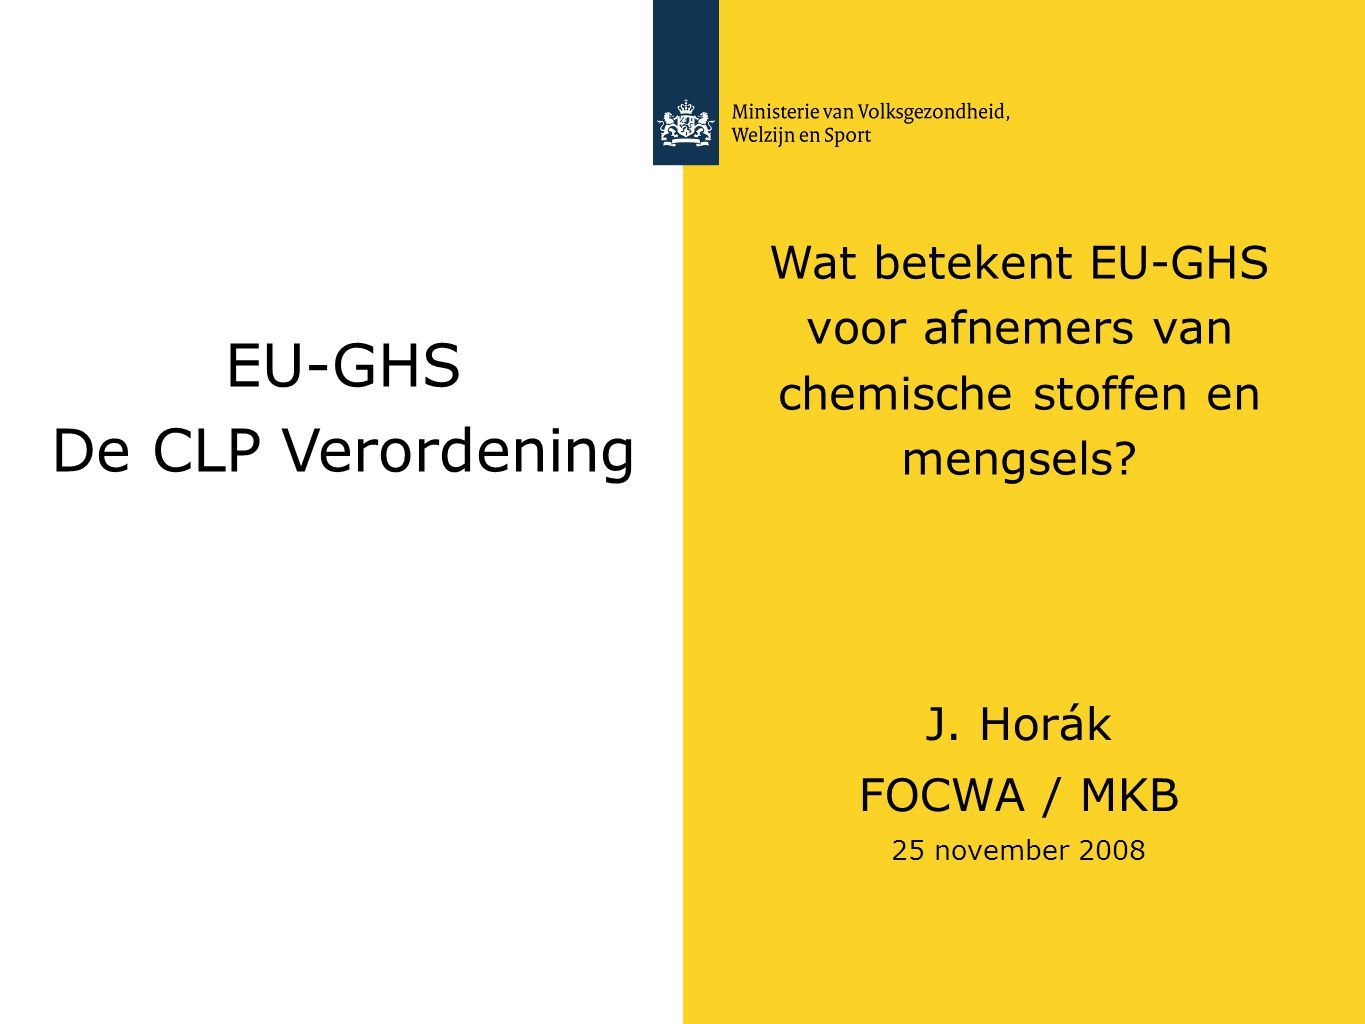 Wat betekent EU-GHS voor afnemers van chemische stoffen en mengsels